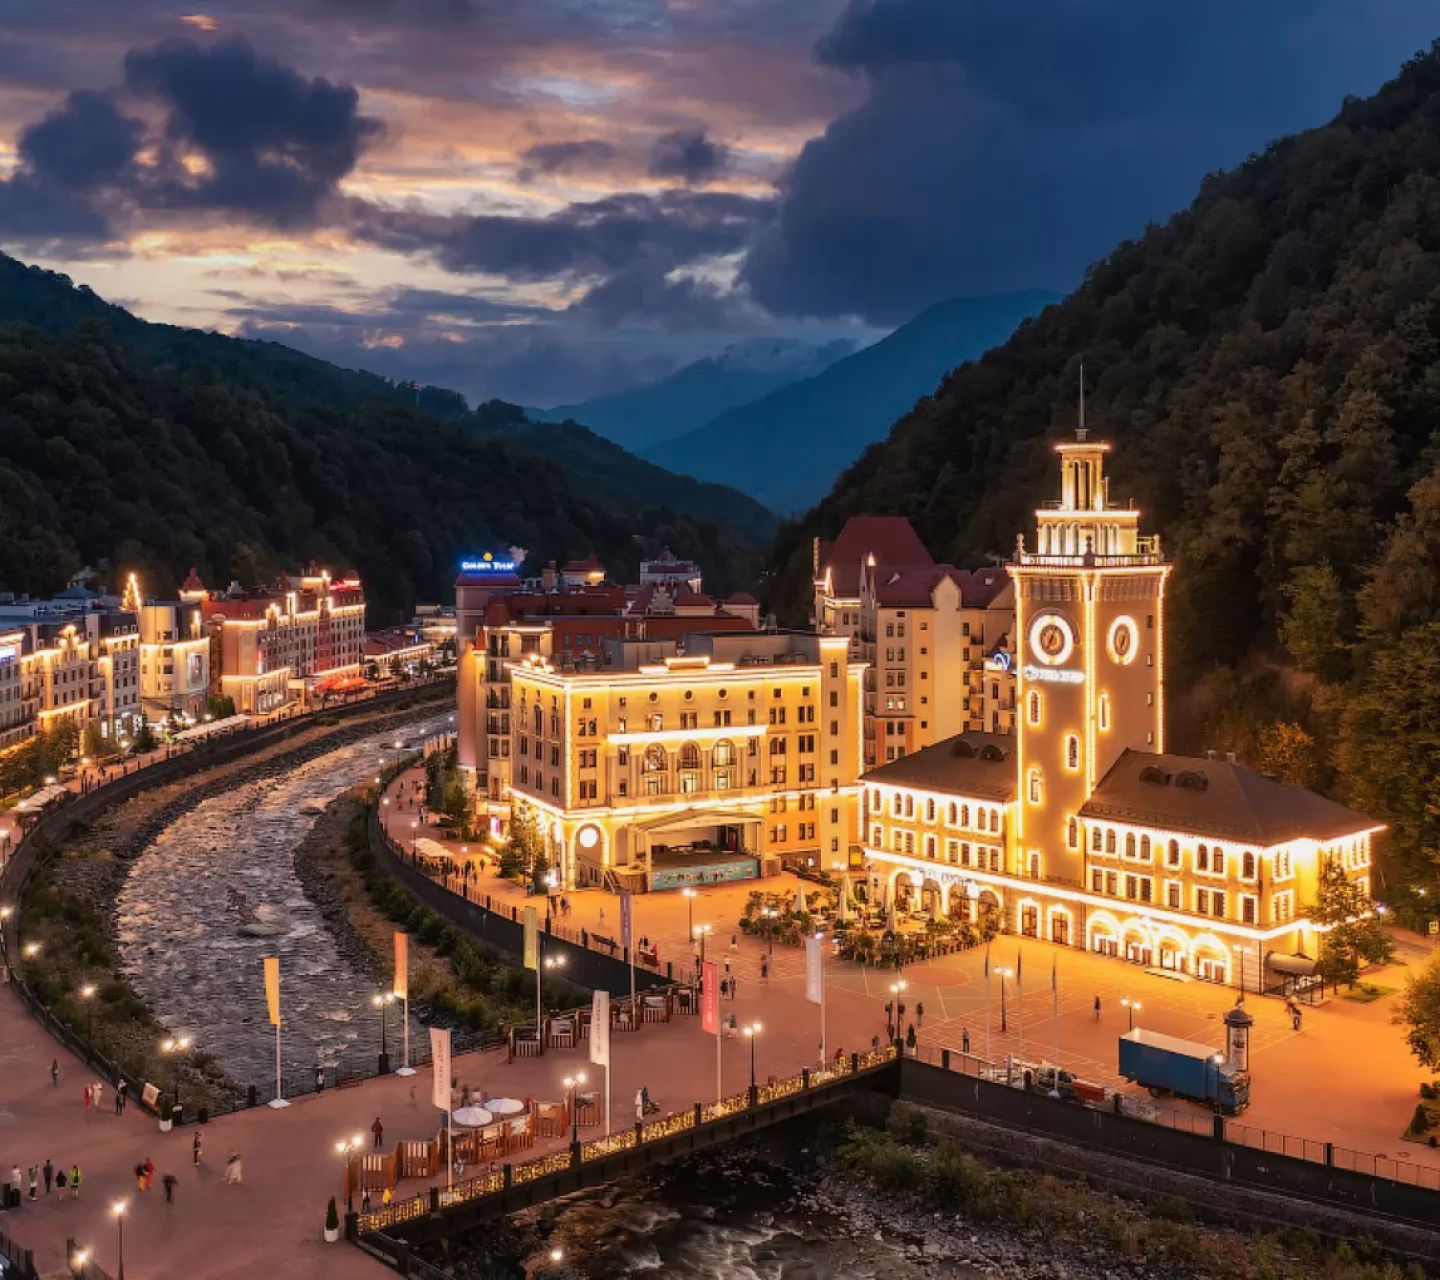 Загрузка отелей в горах Сочи в новогодние праздники составит 90%